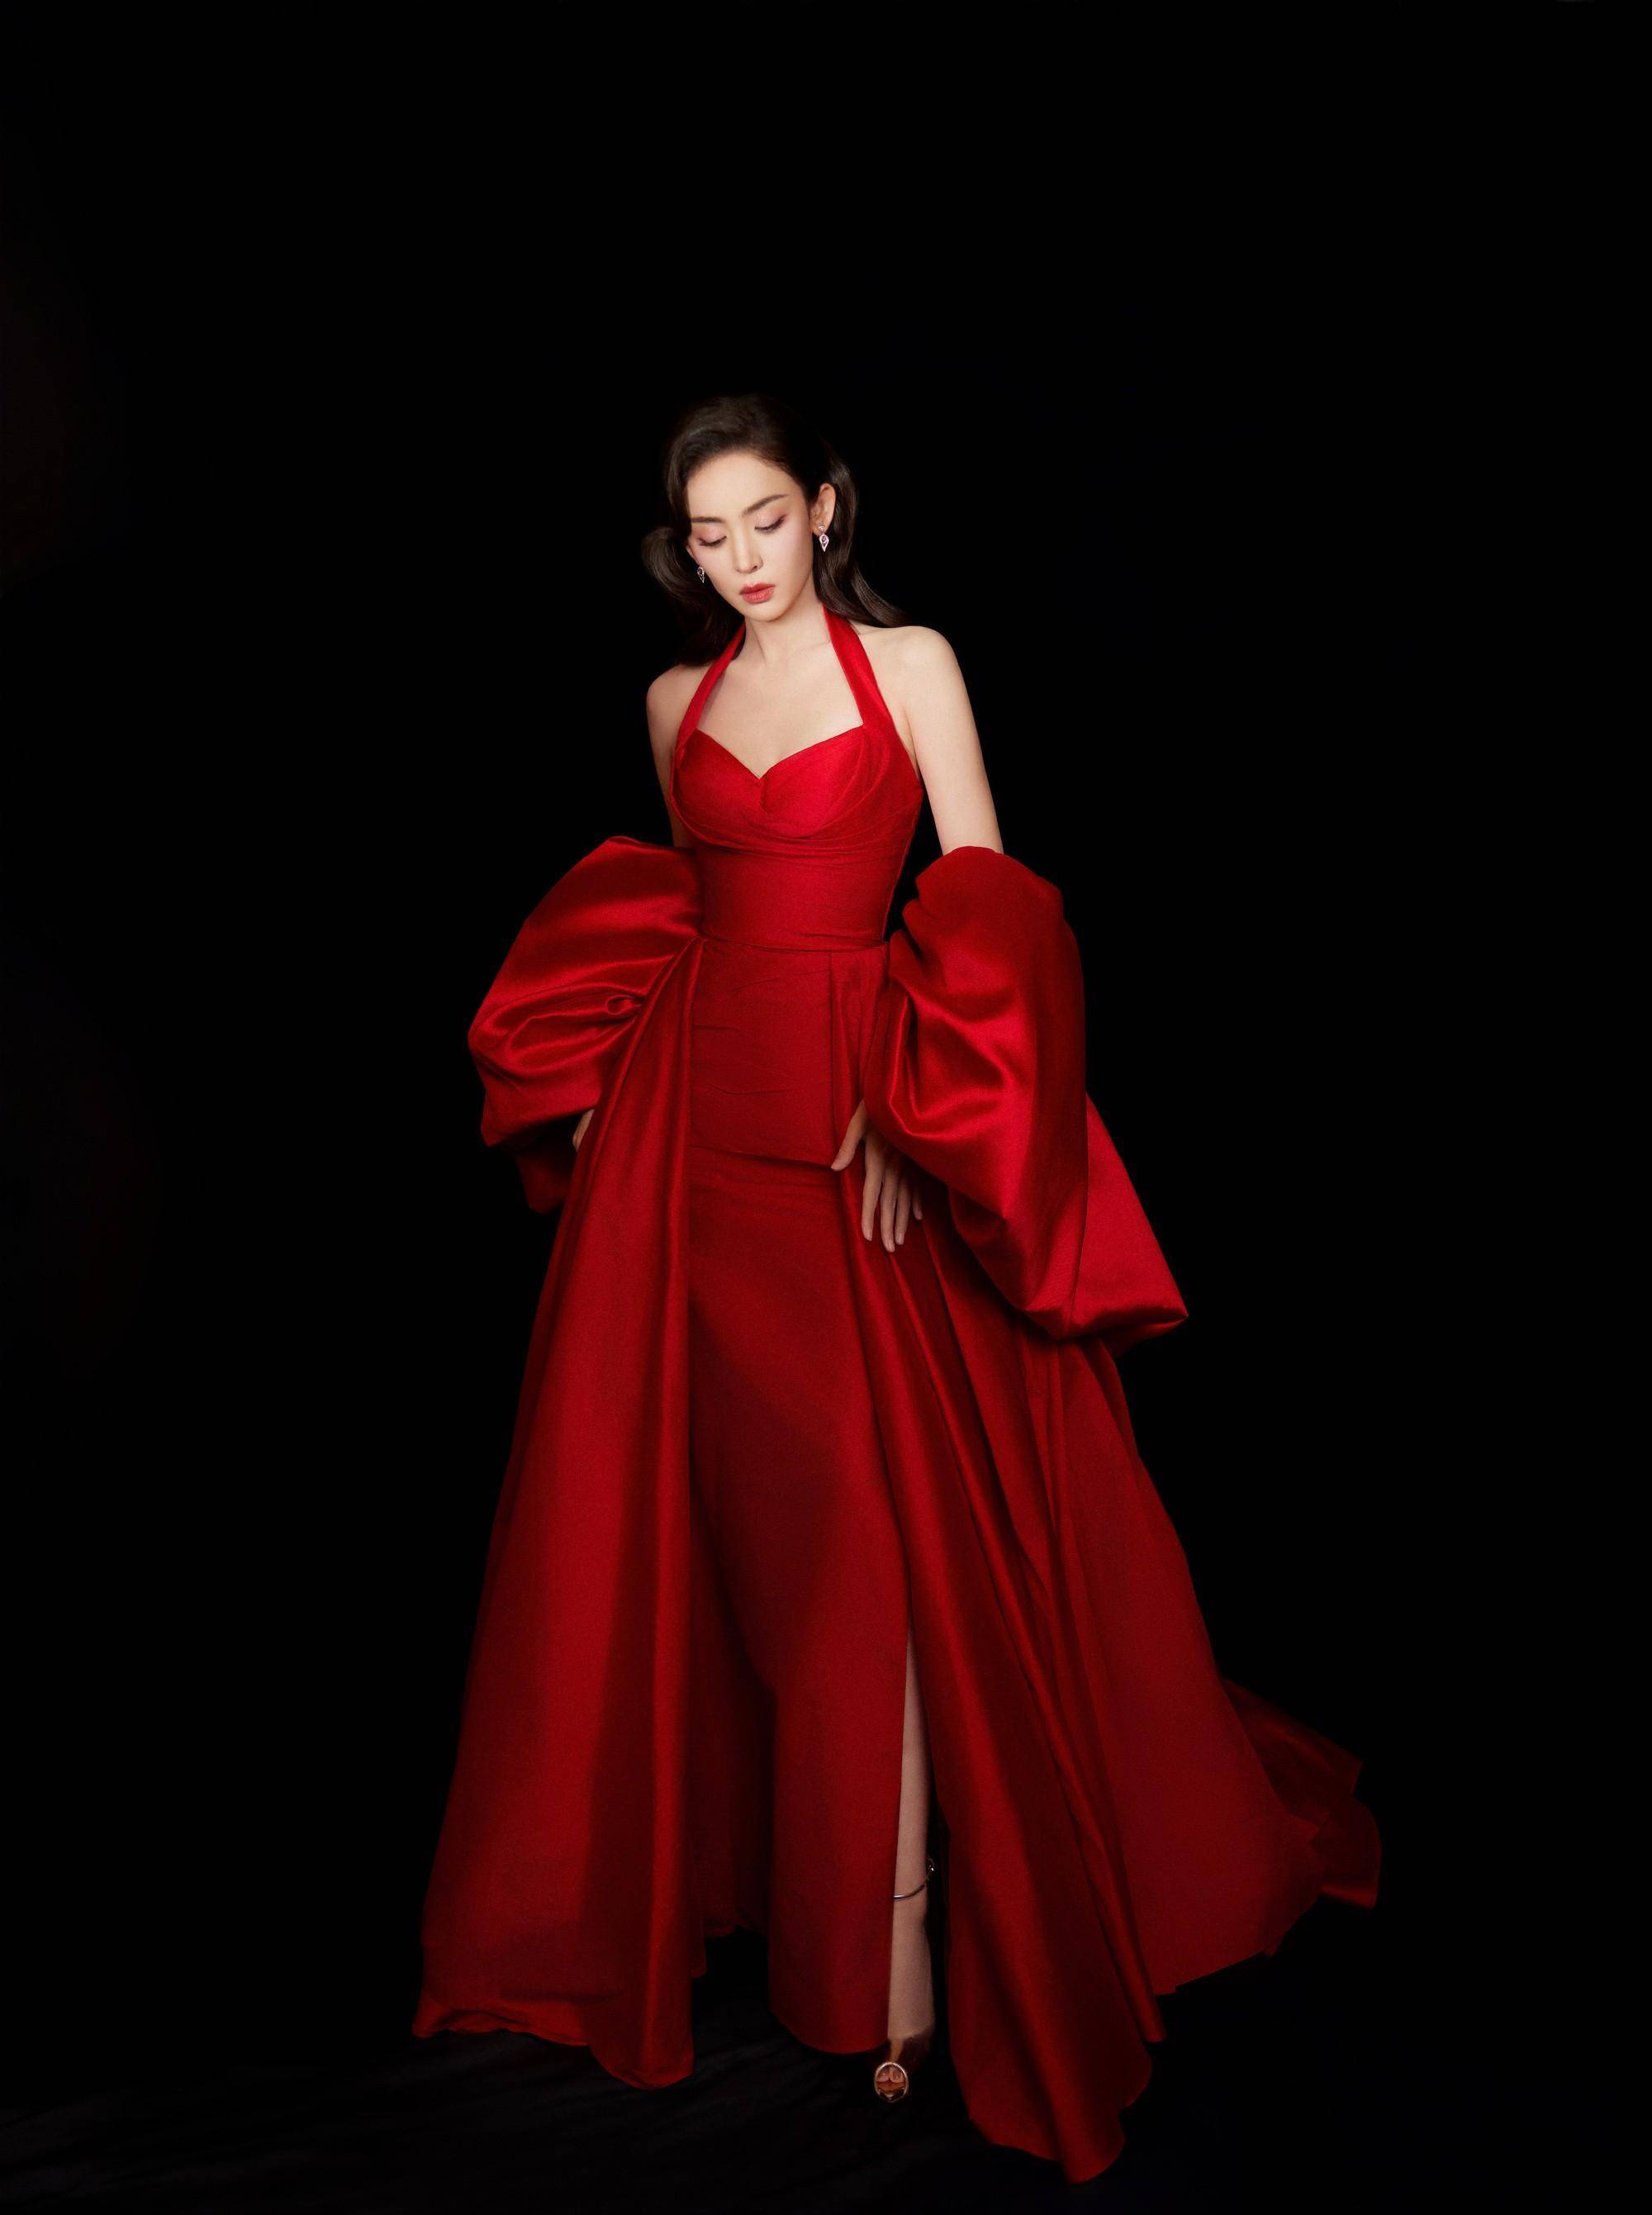 古力娜扎最新红玫瑰礼服造型,明艳照人,简直让人心动不已!